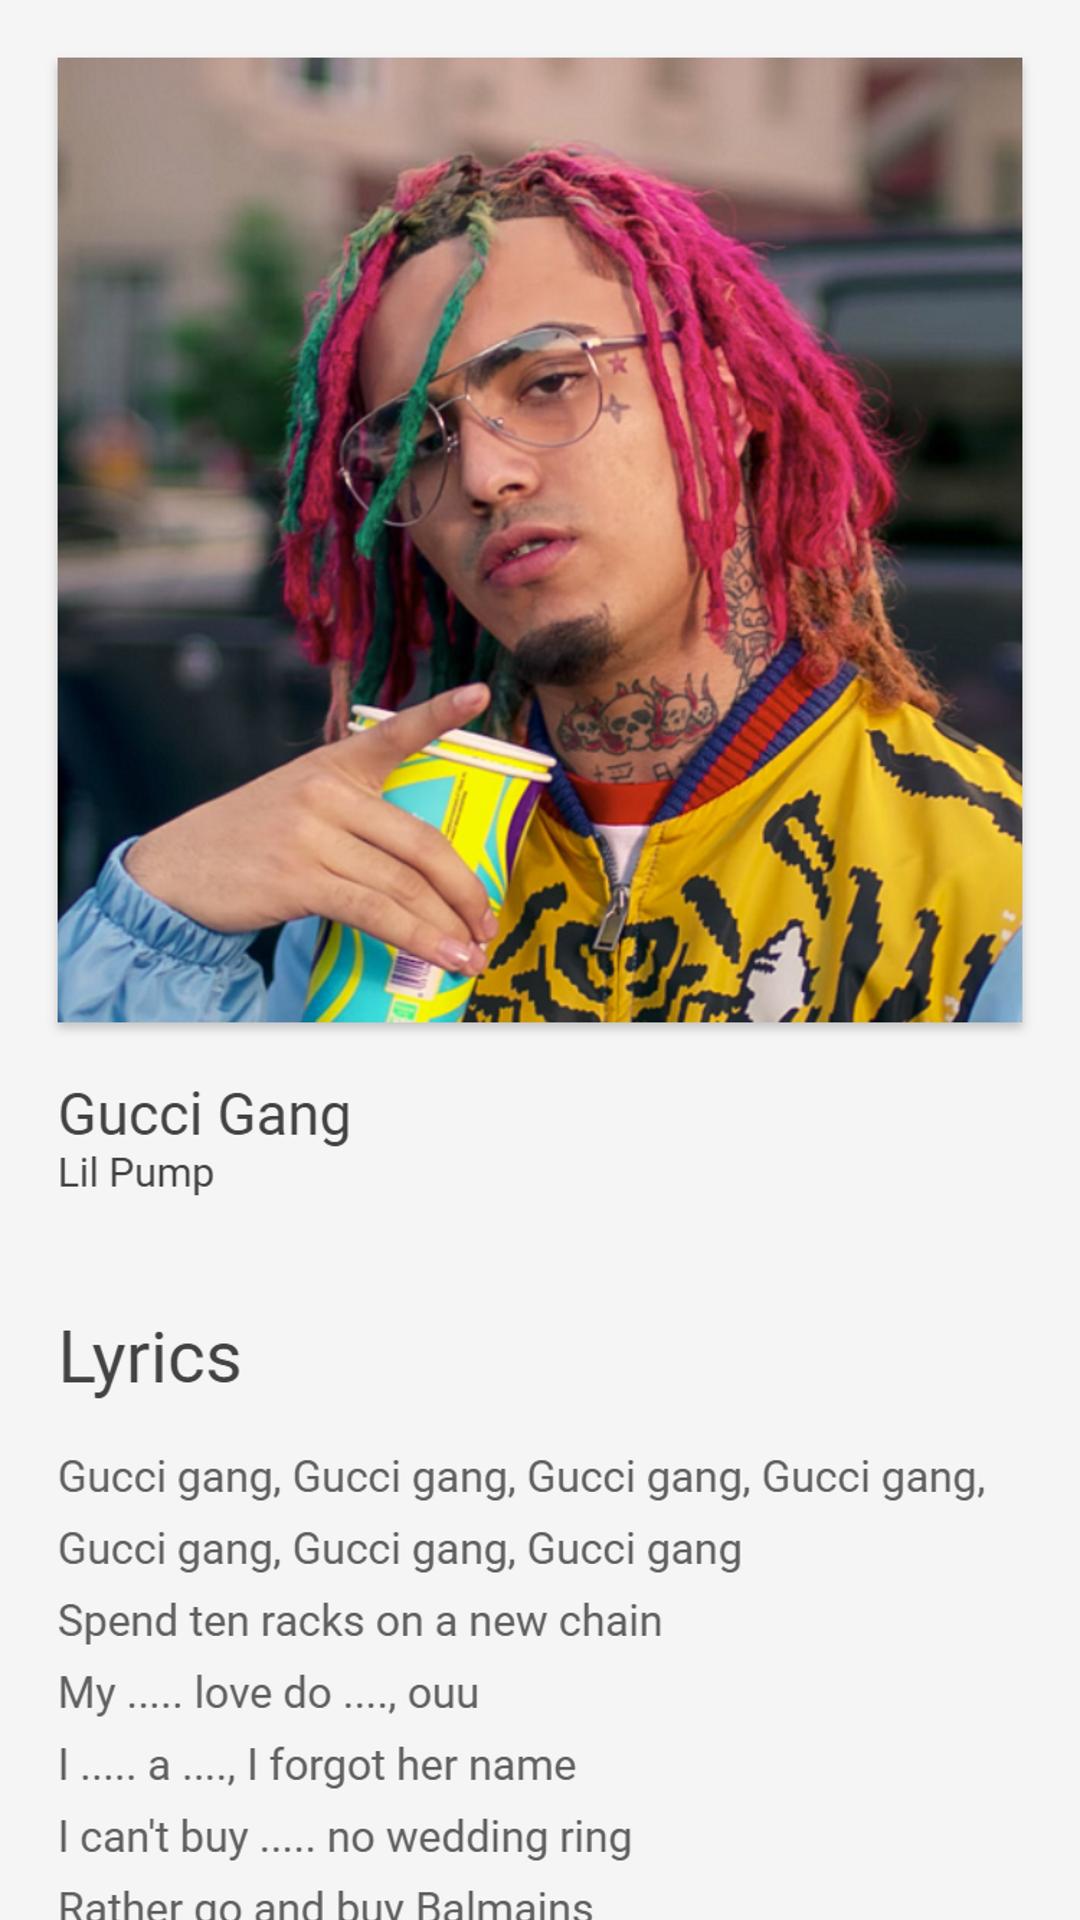 Parcel udstilling Diplomatiske spørgsmål Gucci Gang - Just Lyrics - Lil Pump for Android - APK Download